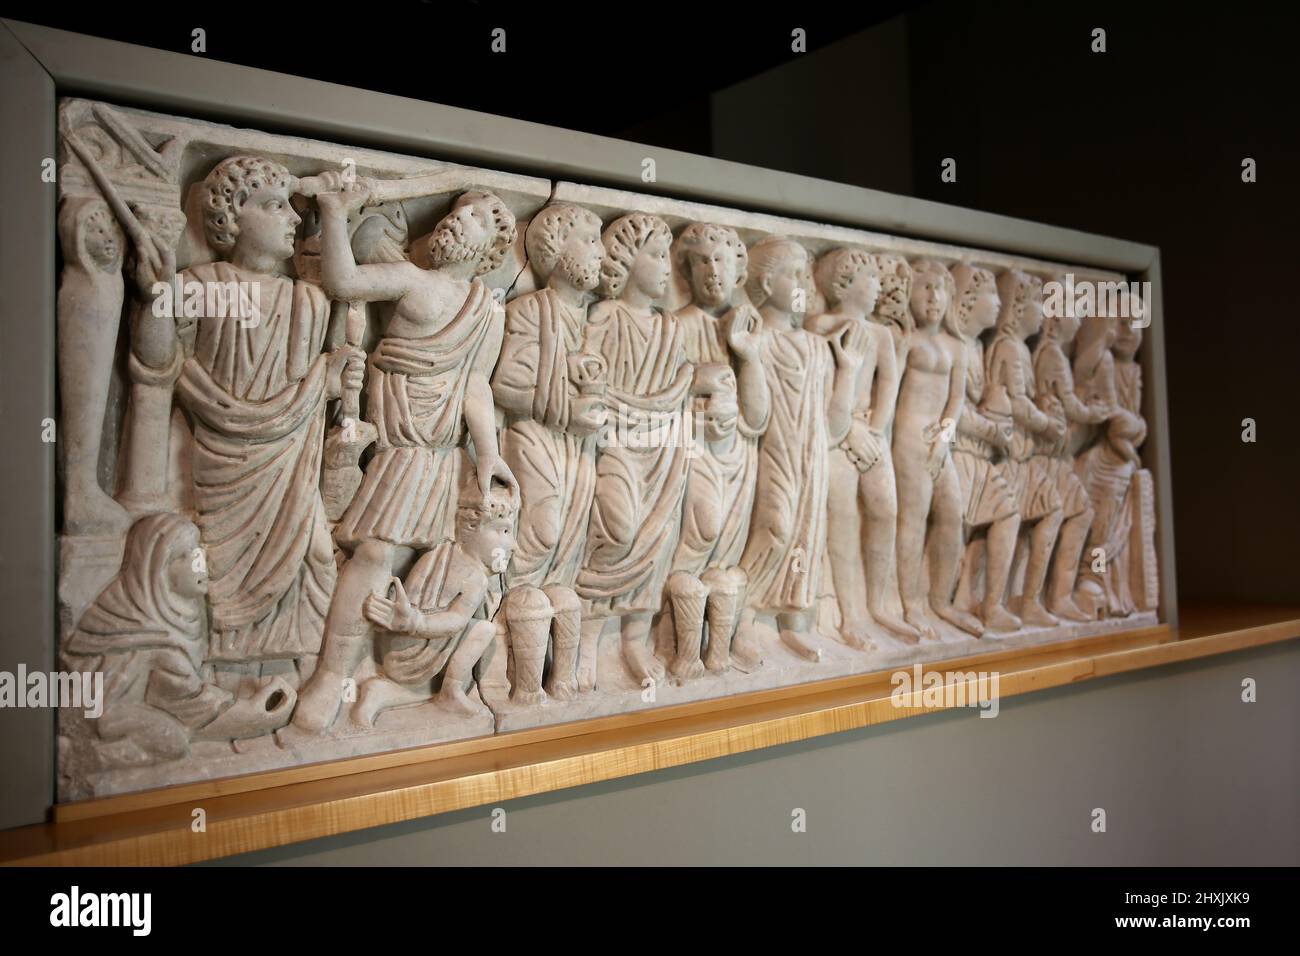 Panel frontal El sarcófago con escenas bíblicas. Carced en un taller romano, 4th c. AD. Museo Frederic Mares. Barcelona, España. Foto de stock